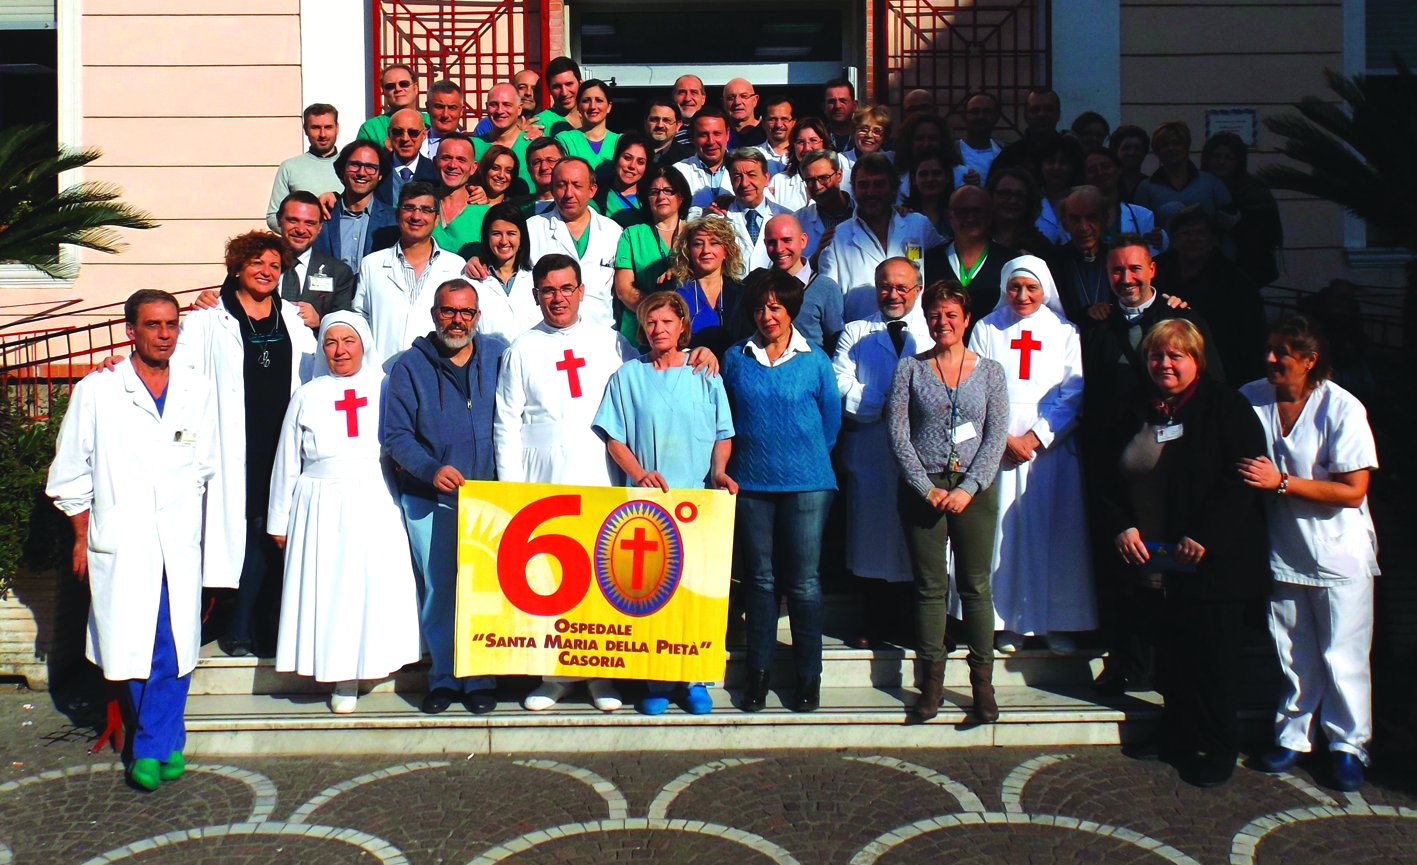  Sanità: Camilliani, l’ospedale “Santa Maria della Pietà” di Casoria (Napoli) festeggia il 60esimo anniversario